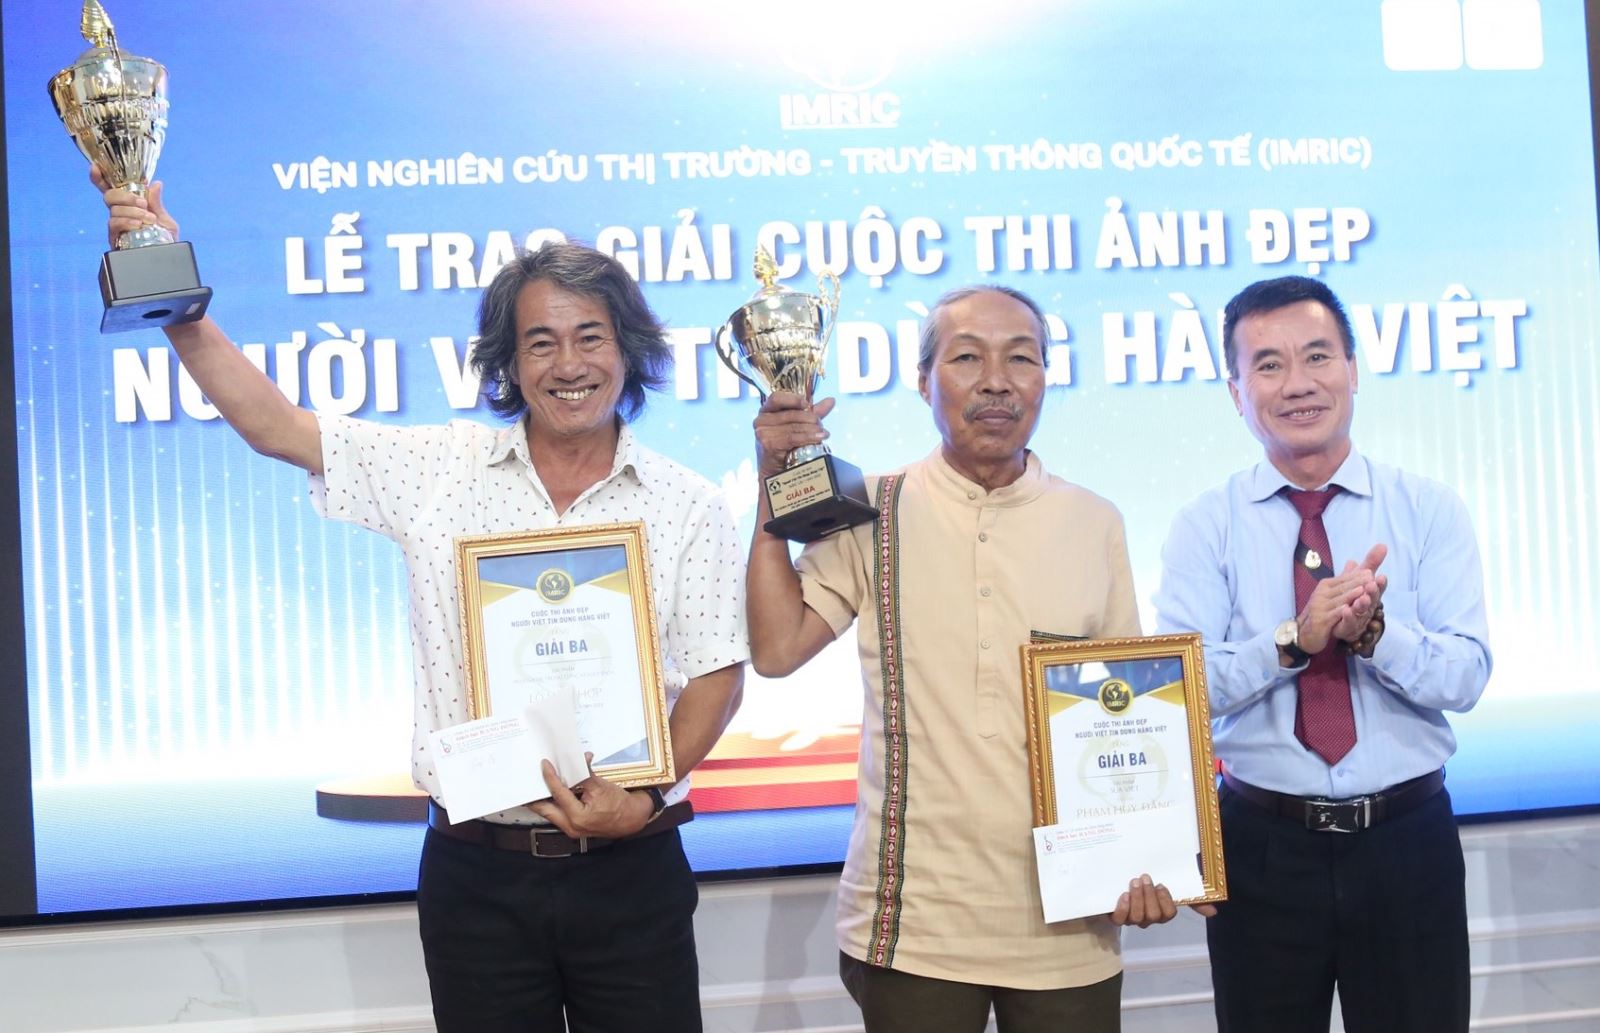 Nhà báo Dương Vũ Thông – Phó Chủ tịch thường trực Hội Nhà báo TP.HCM trao 2 giải ba cho tác giả Lò Văn Hợp và tác giả Phạm Huy Đằng.